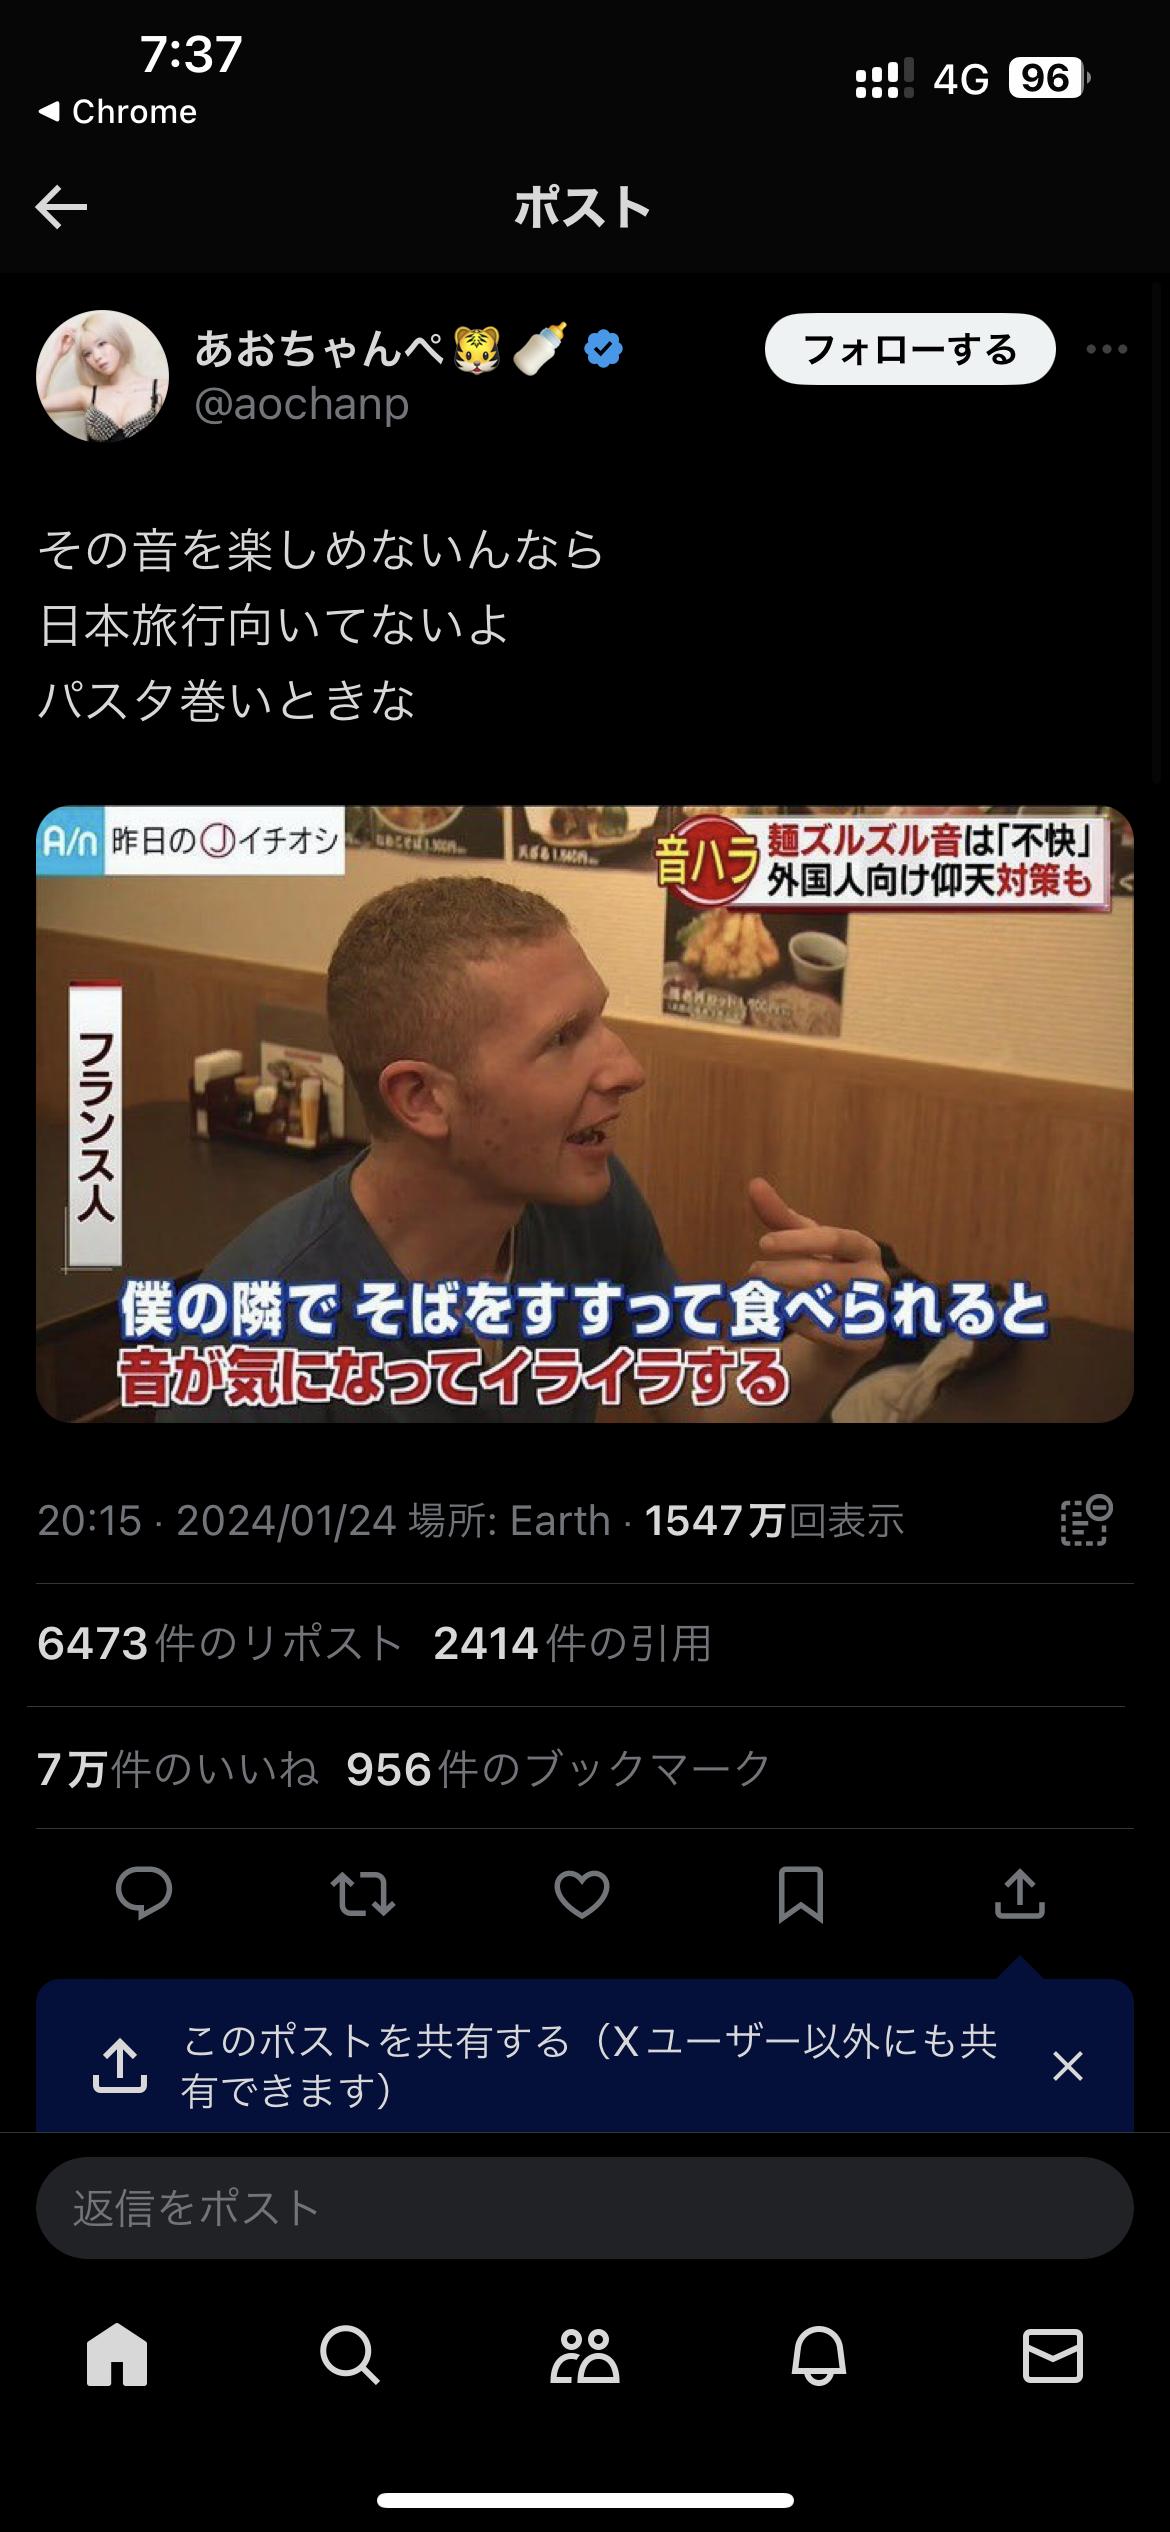 【画像】欧米人「日本旅行に来ると、麺をすする日本人が多くて不快」日本人「自国でパスタ巻いとけ」7万いいねｗｗｗｗｗｗｗｗｗ